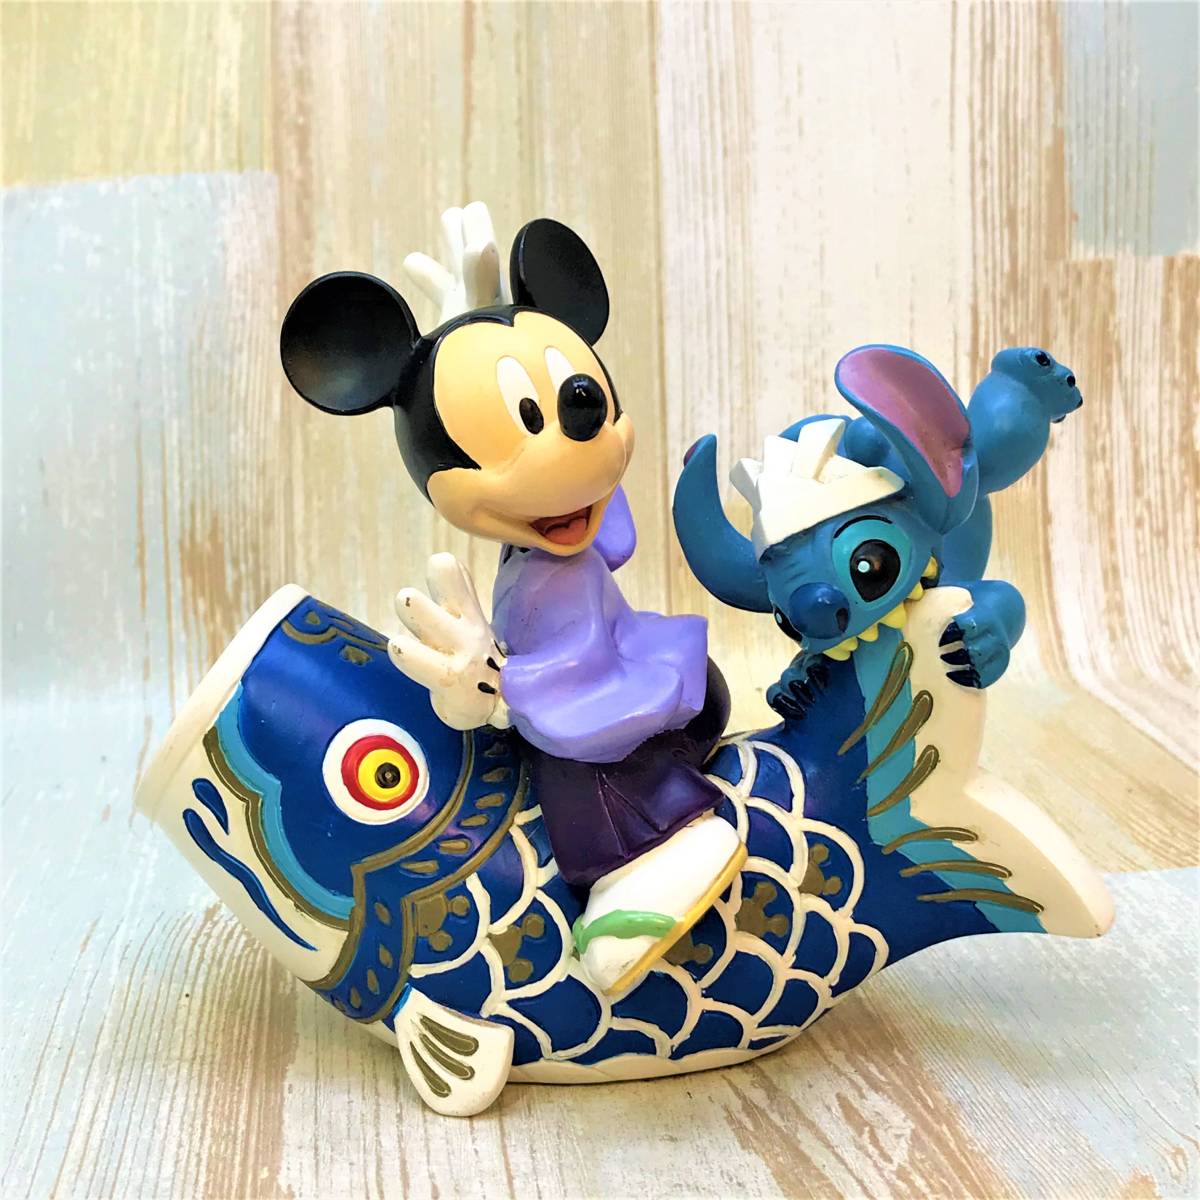 Raro★Lilo & Stitch May Doll Casco Día del niño Carp Streamer Festival para niños Figura de Mickey Mouse★Disney Disney TDL, antiguo, recopilación, disney, otros